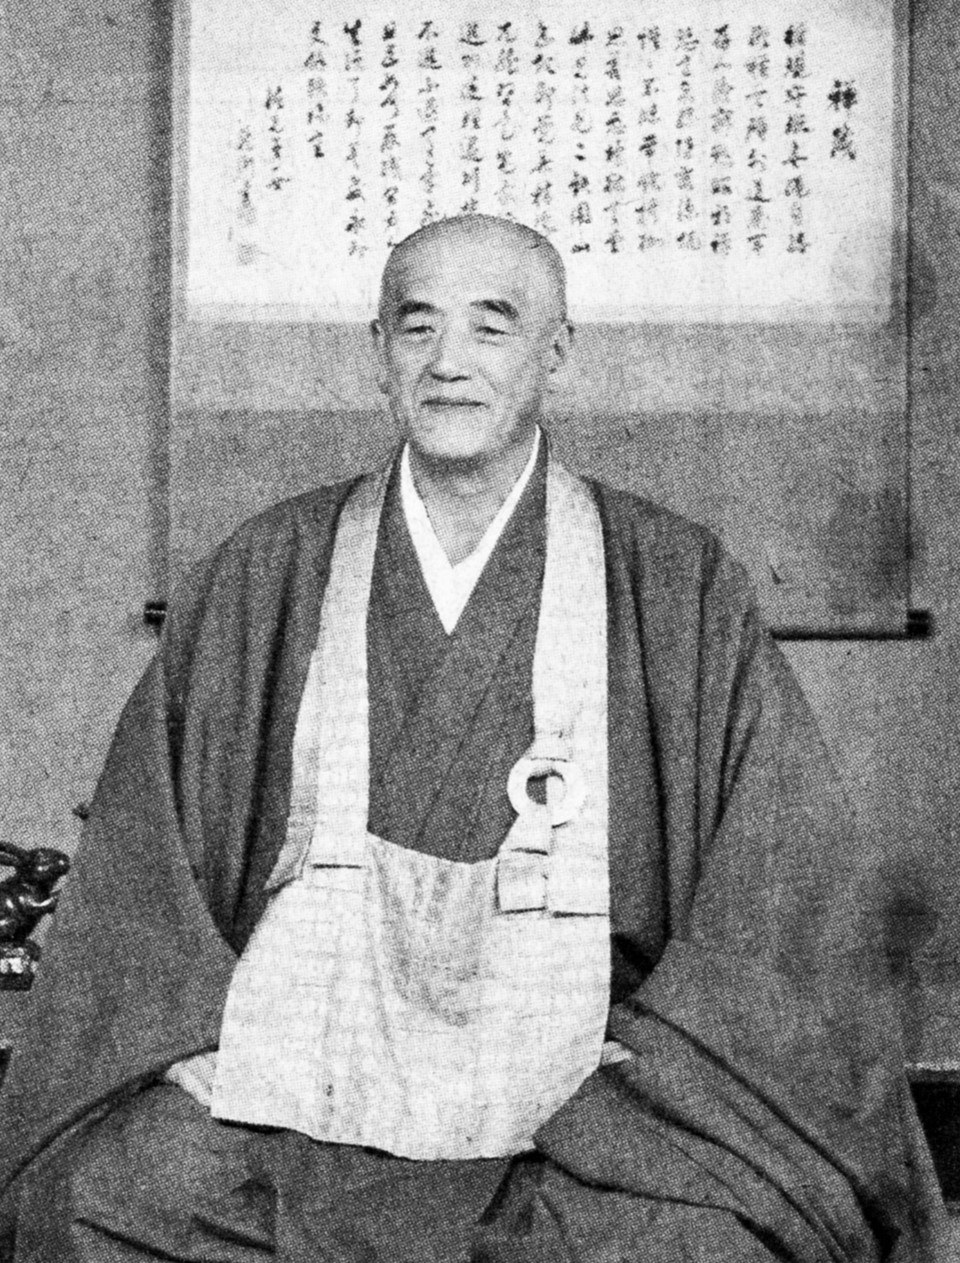 een man in een Japans monniksgewaad zit in meditatiehouding voor een scroll met calligrafie, hij kijkt vriendelijk naar de camera